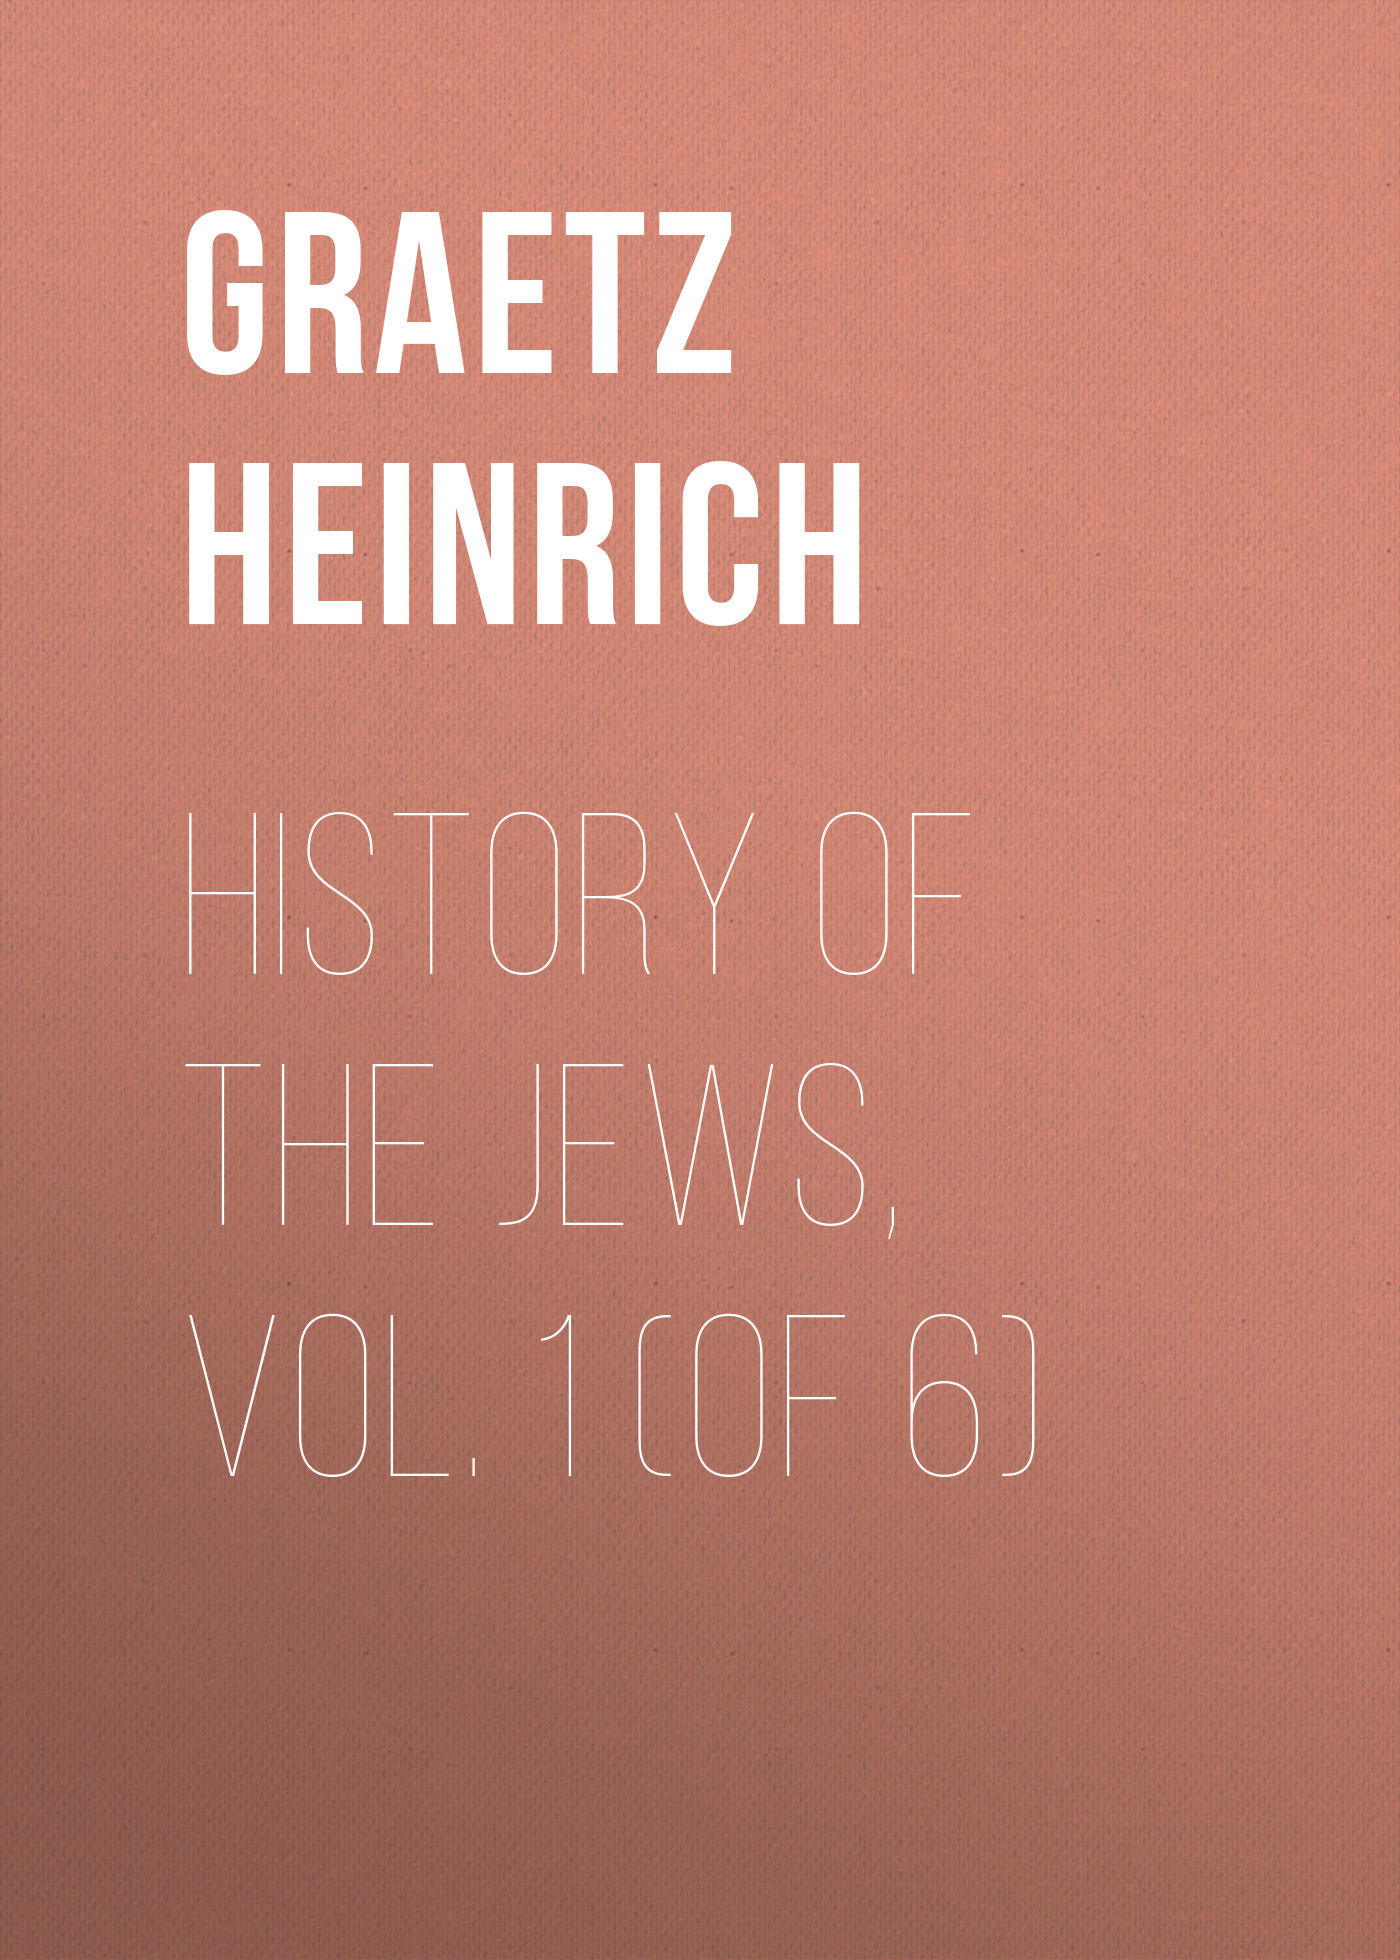 Книга History of the Jews, Vol. 1 (of 6) из серии , созданная Heinrich Graetz, может относится к жанру История, Зарубежная старинная литература, Зарубежная классика. Стоимость электронной книги History of the Jews, Vol. 1 (of 6) с идентификатором 24936229 составляет 0 руб.